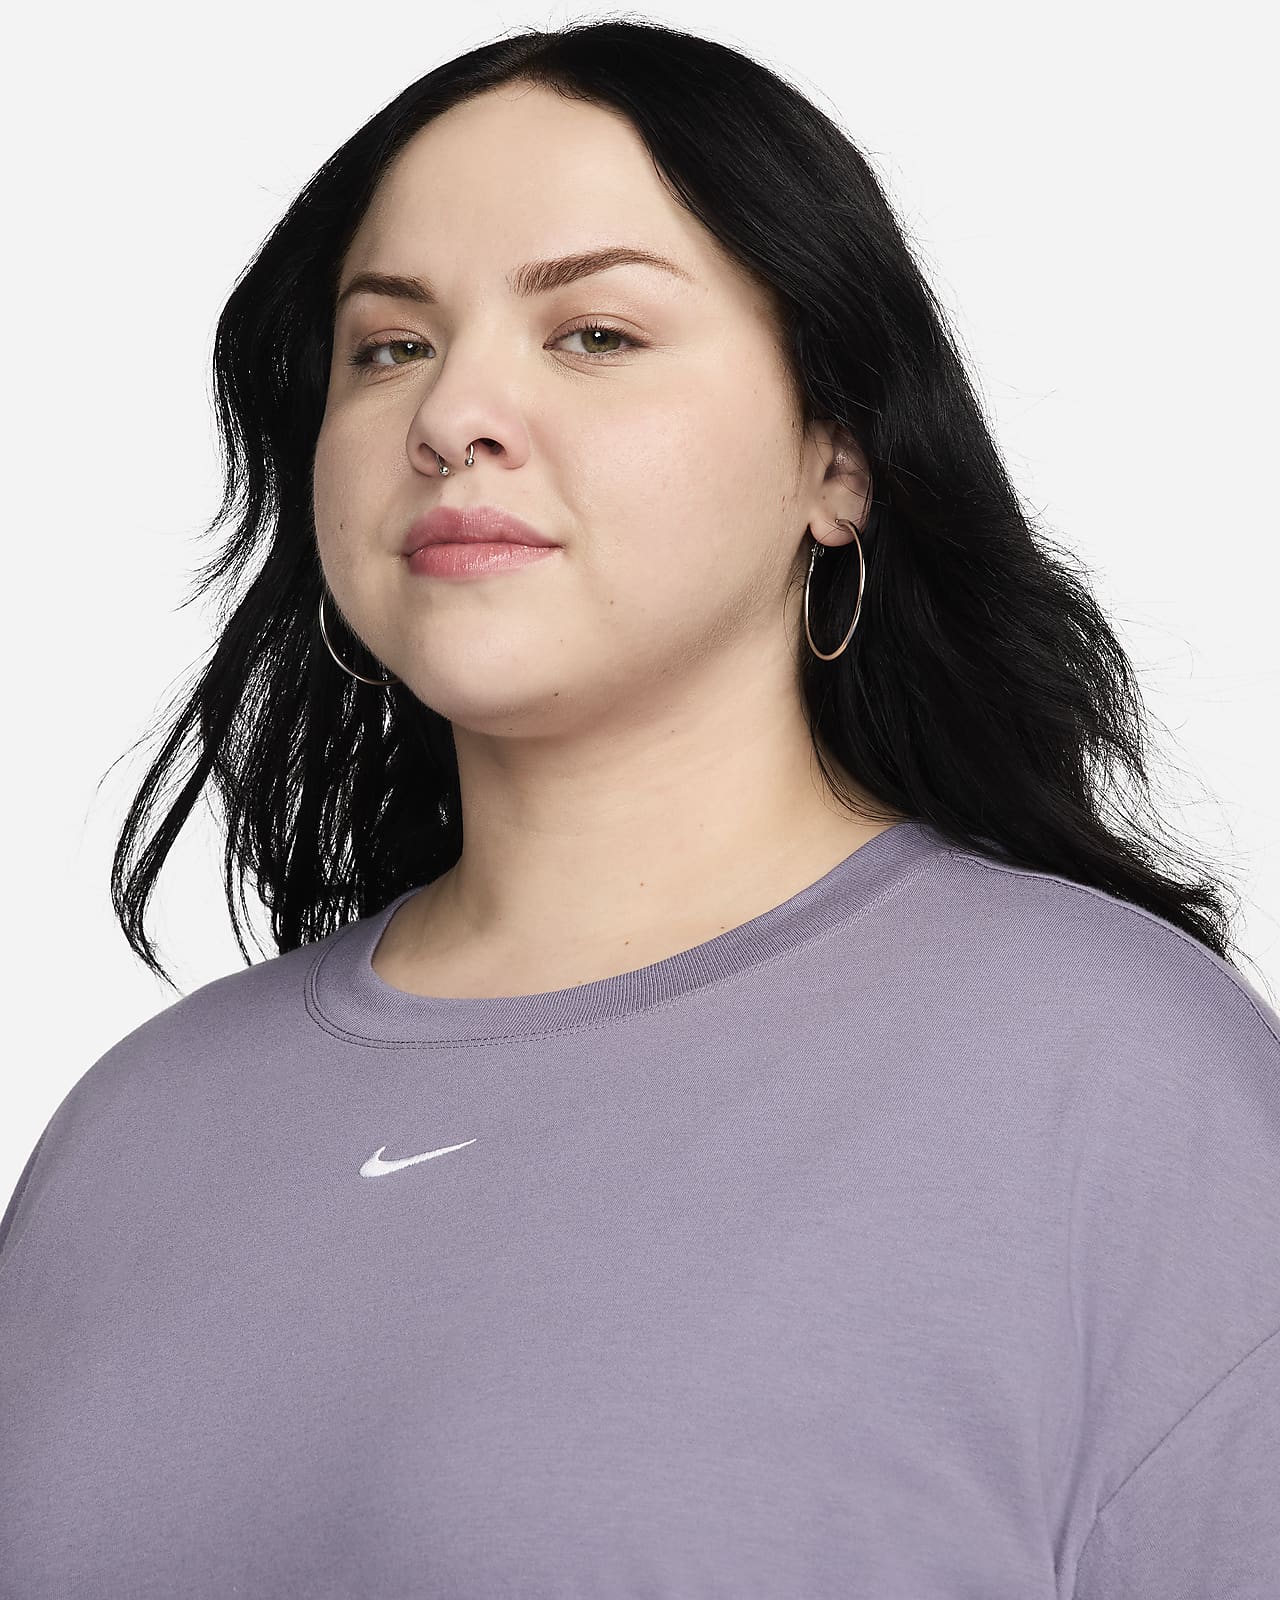 Nike Sportswear Essential Women's Short-Sleeve T-Shirt Dress (Plus Size).